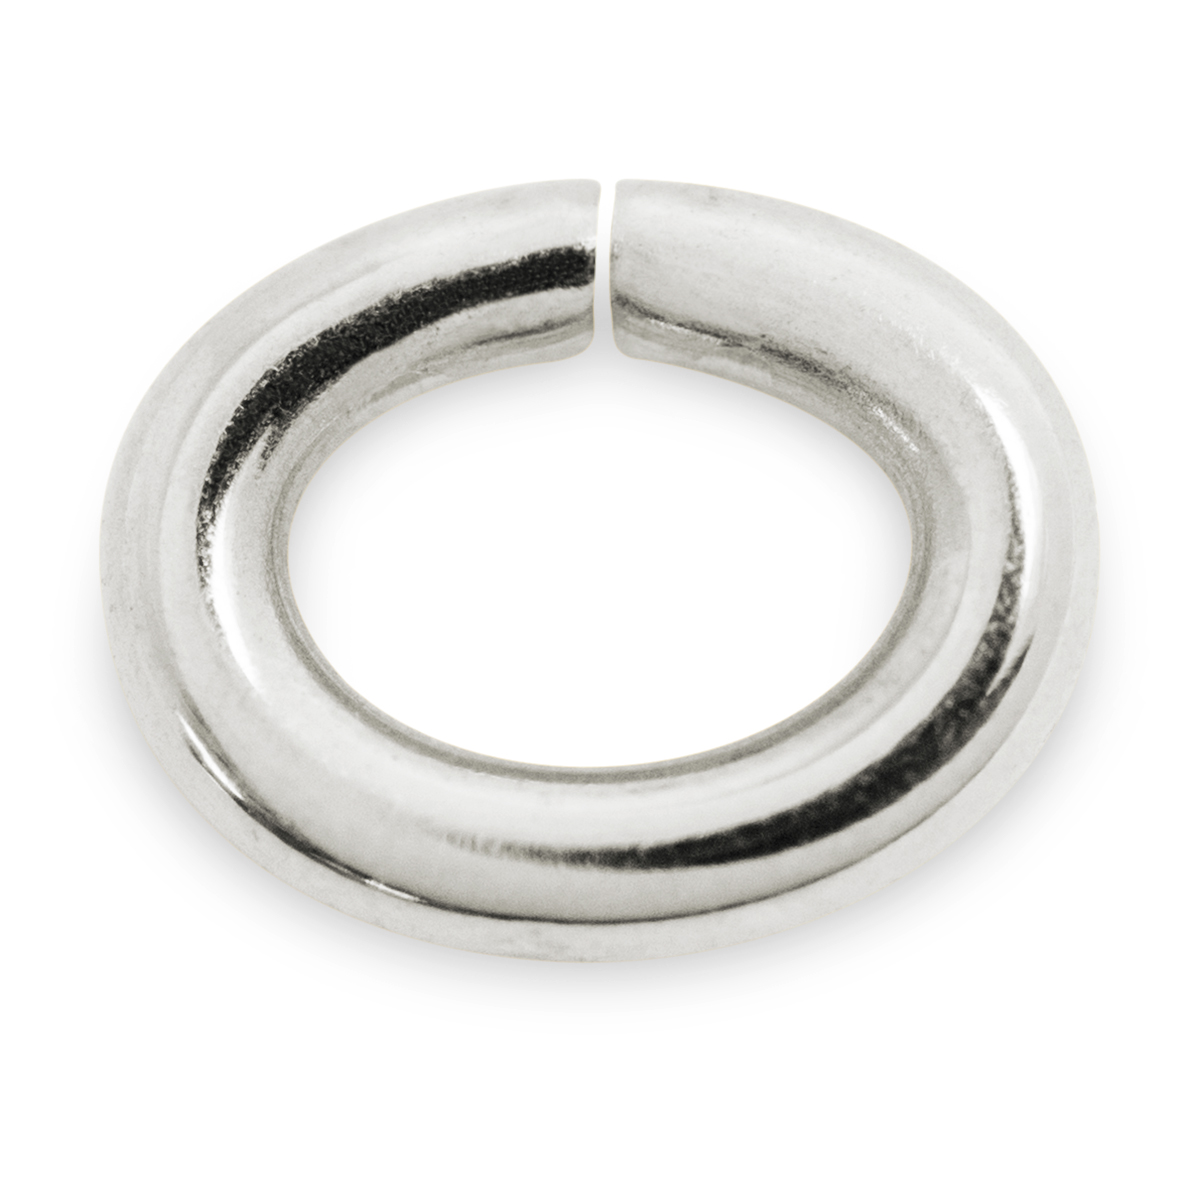 Binderinge, oval, 925/- Silber, Ø 3,5 mm, Stärke 0,7 mm